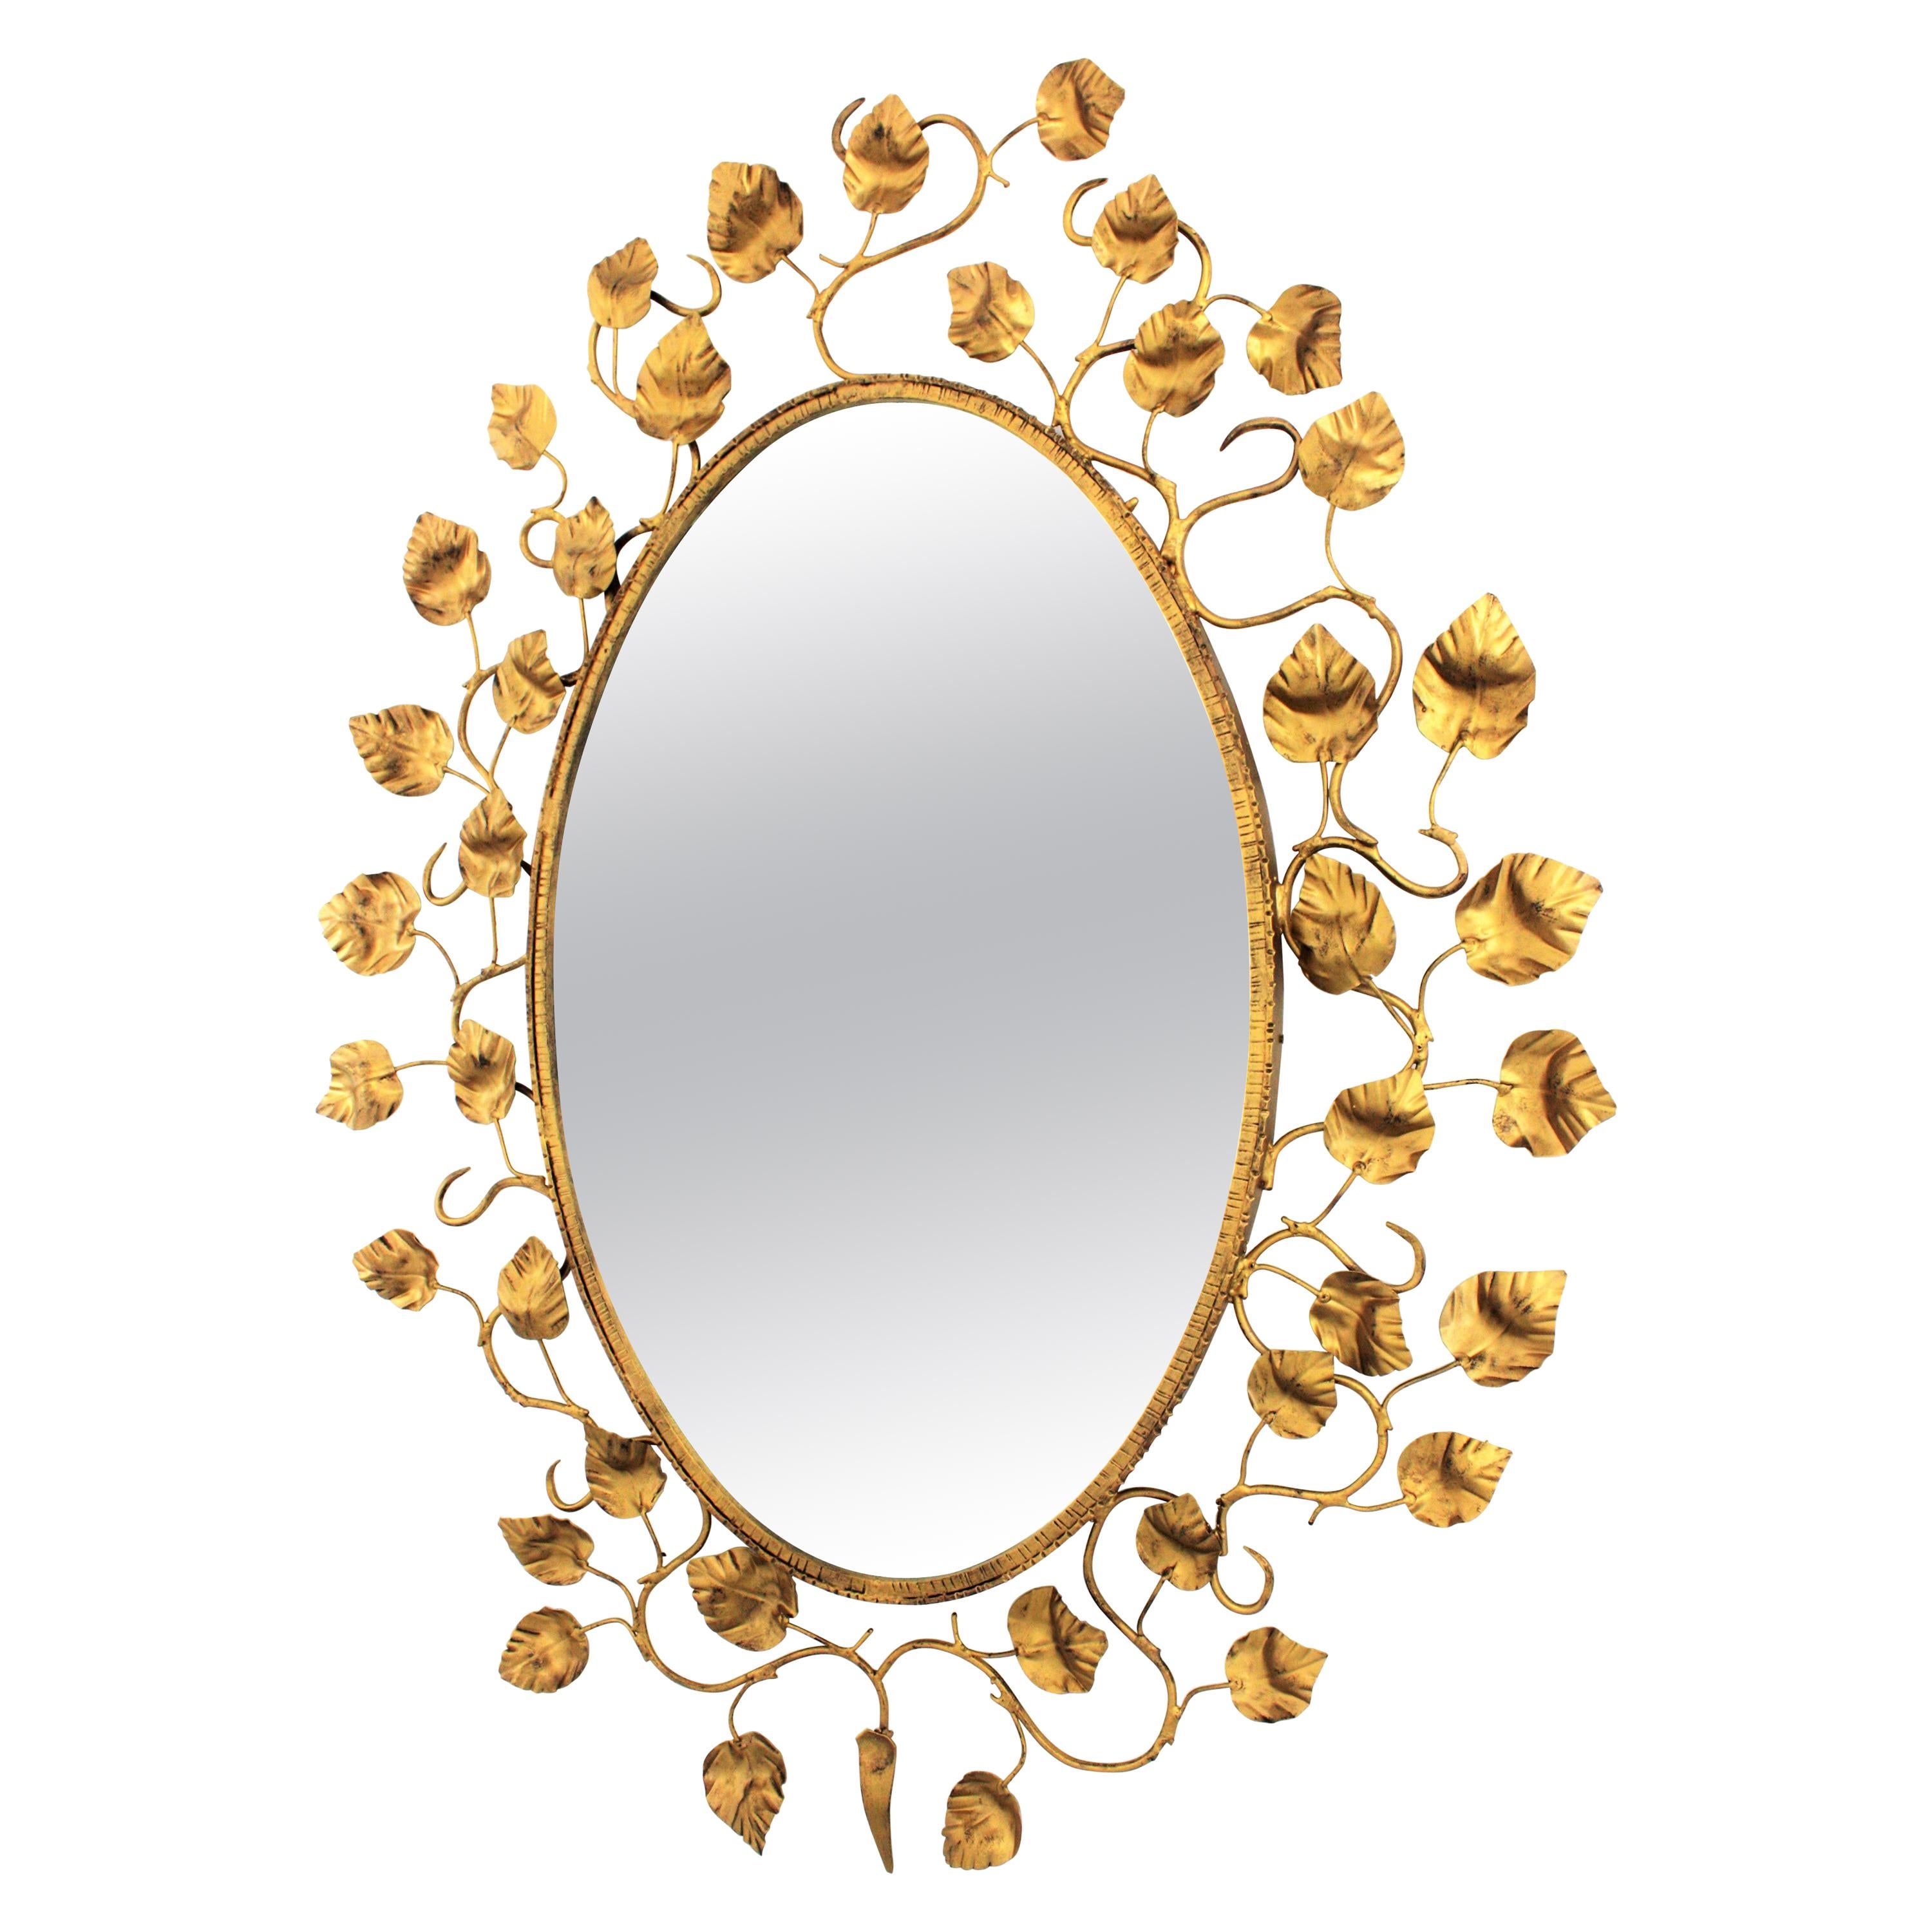 Miroir ovale Foliage en métal doré, années 1950
Grand miroir ovale en fer doré avec encadrement de feuillage. Espagne, années 1950-1960.
Ce miroir ovale présente un cadre très décoratif composé de branches et de feuilles en fer doré. 
Sa grande